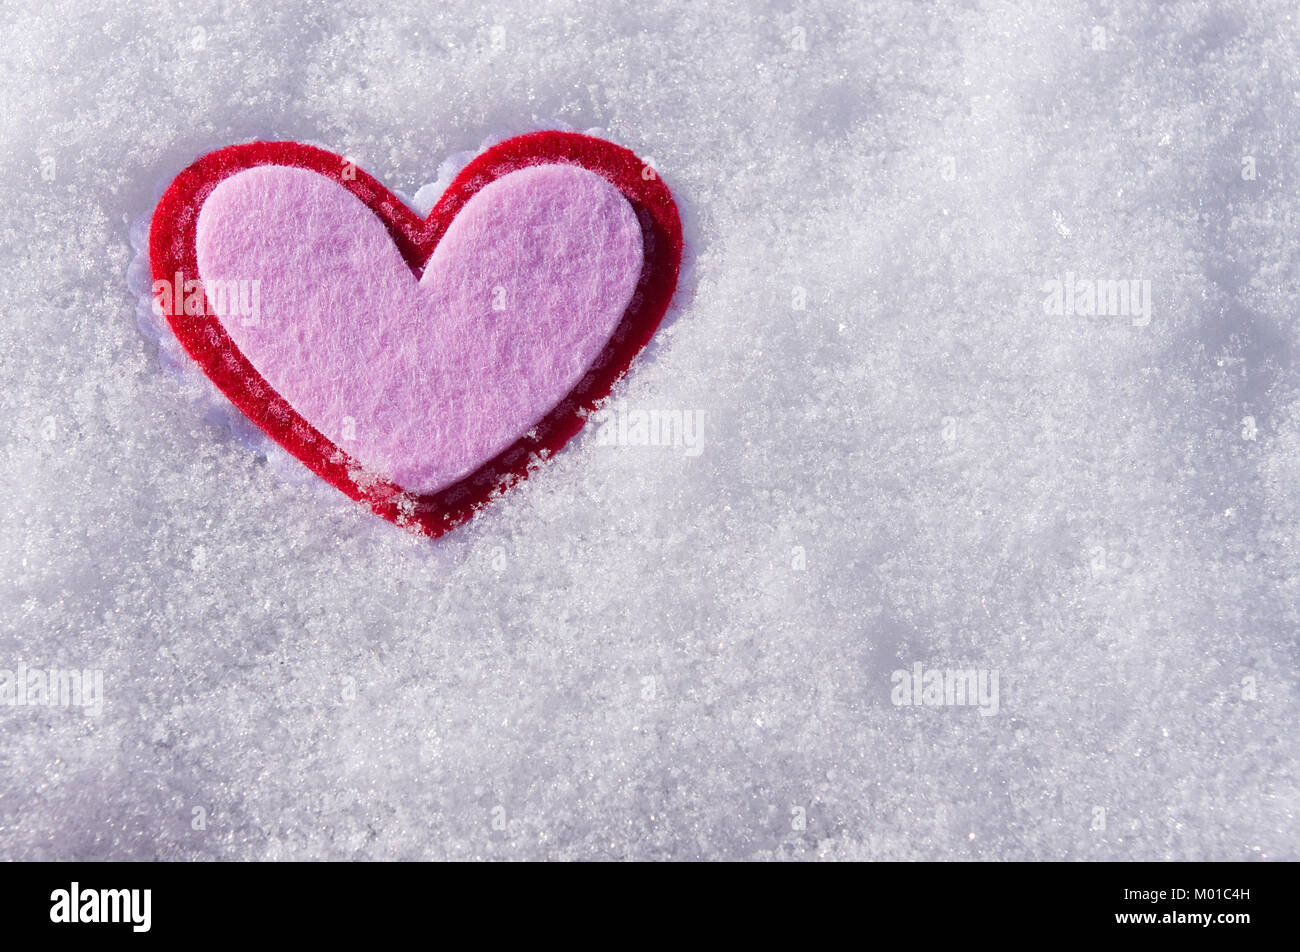 Feutre rose coeur dans la neige Banque D'Images